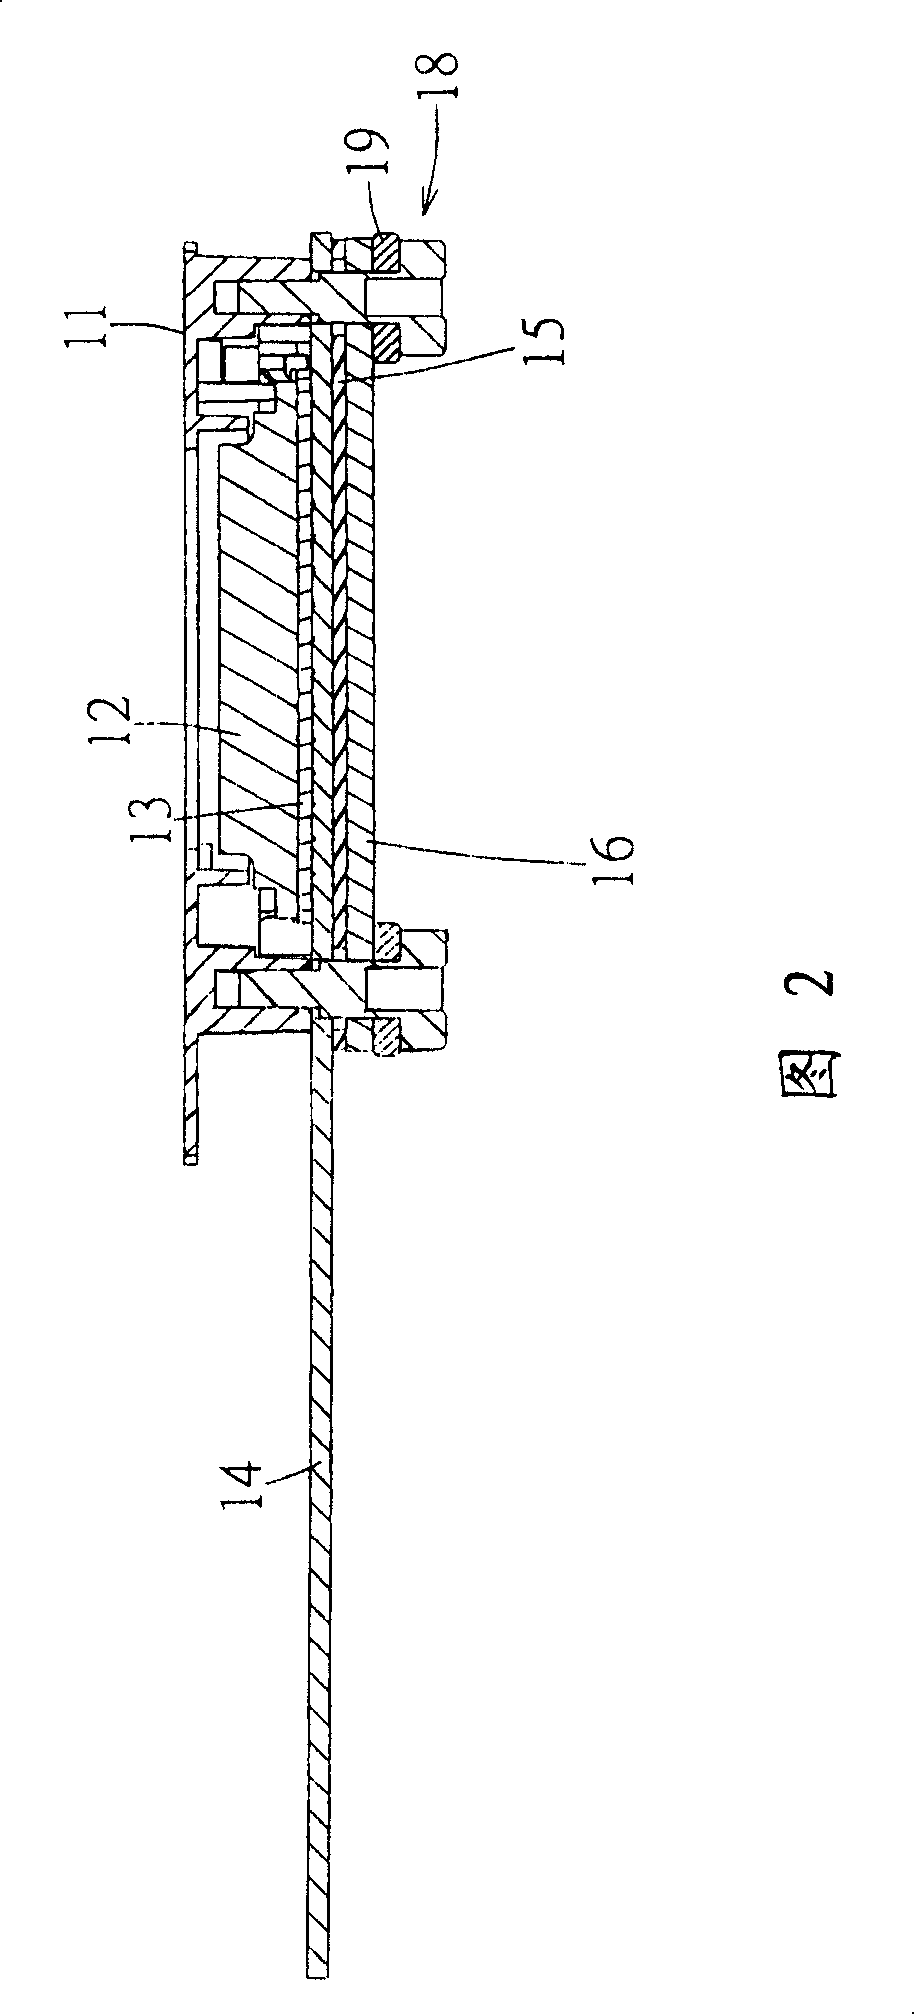 Light valve module